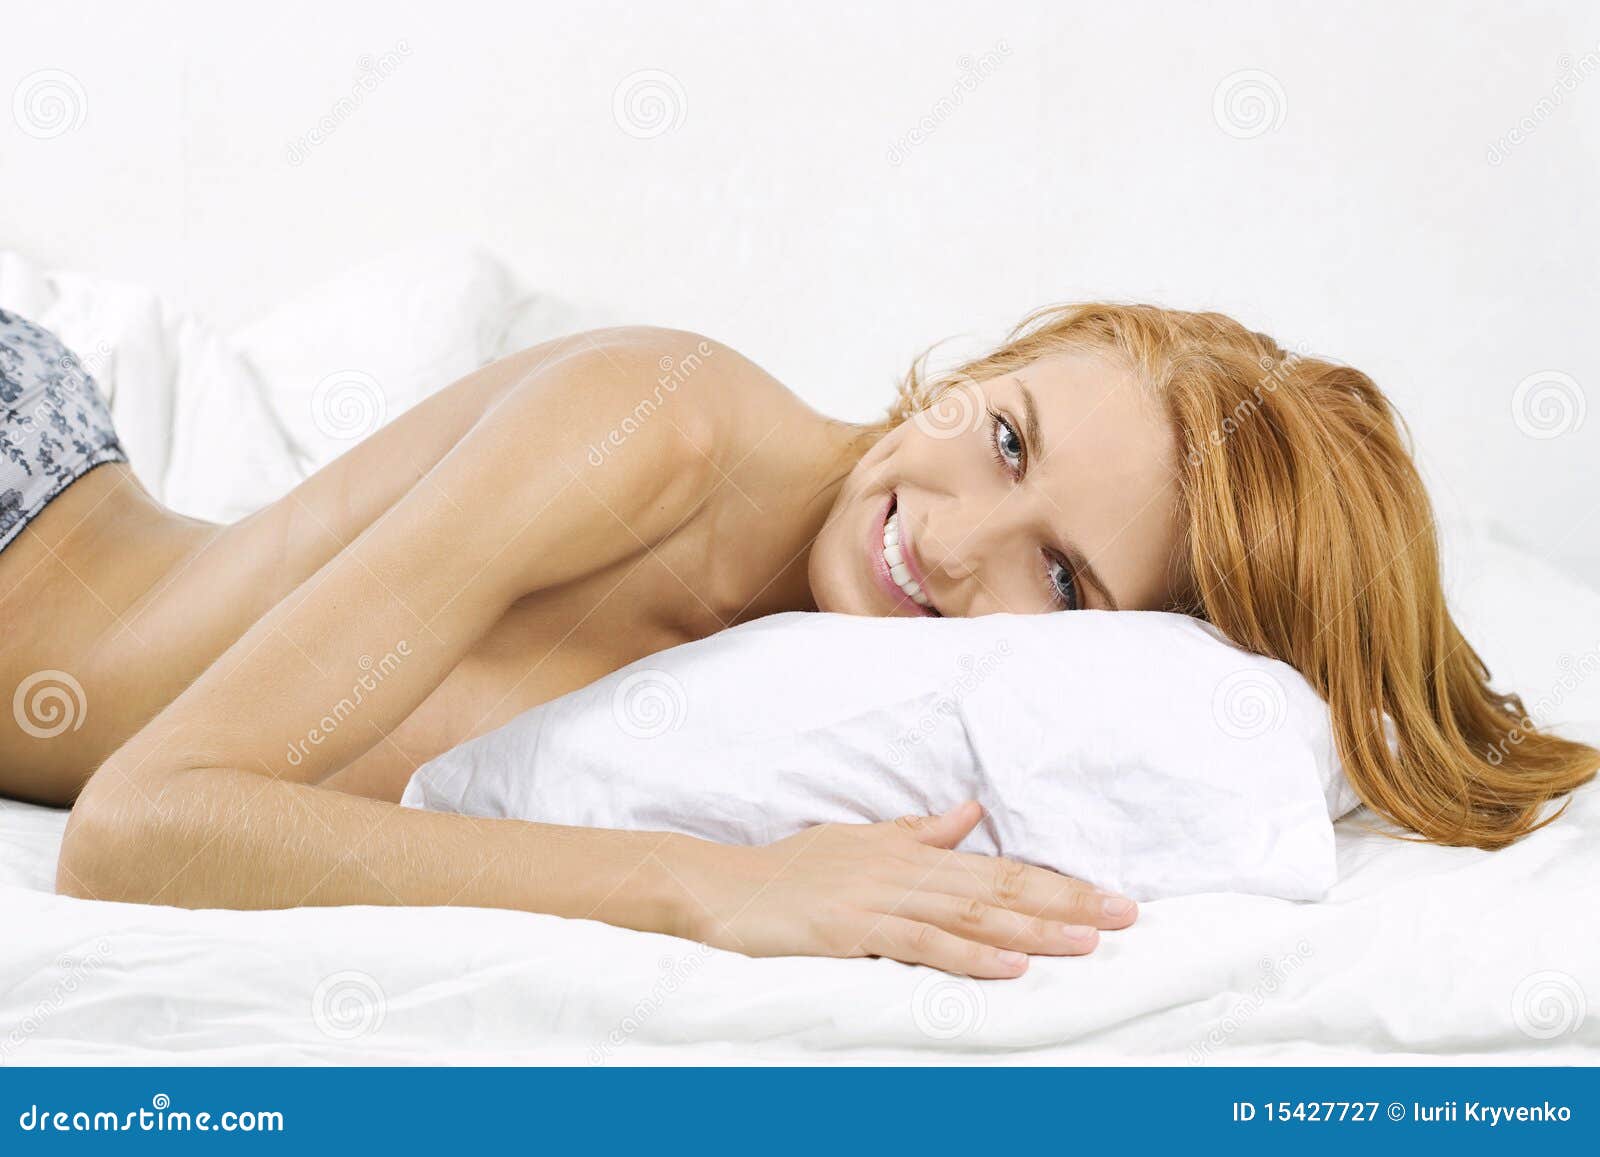 Удовольствие женщины в постели. Женщина лежит стоковое фото. Женщина в постели прозрачном фоне. Woman lying in Bed reference.